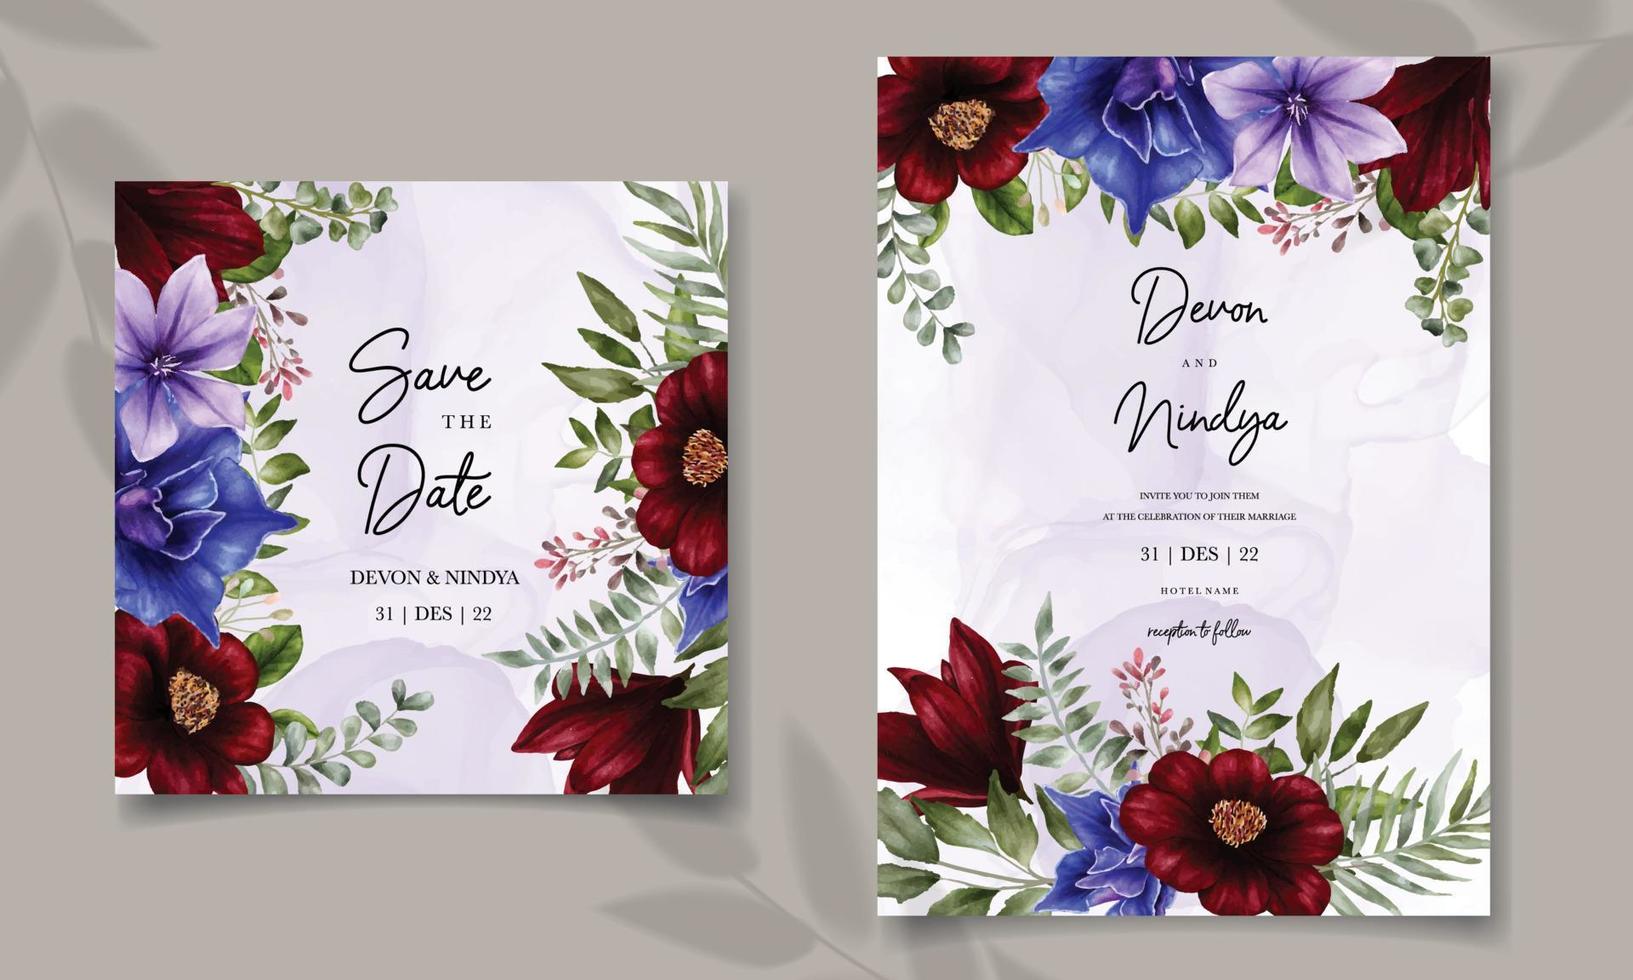 carta di invito a nozze con fiore ad acquerello vettore